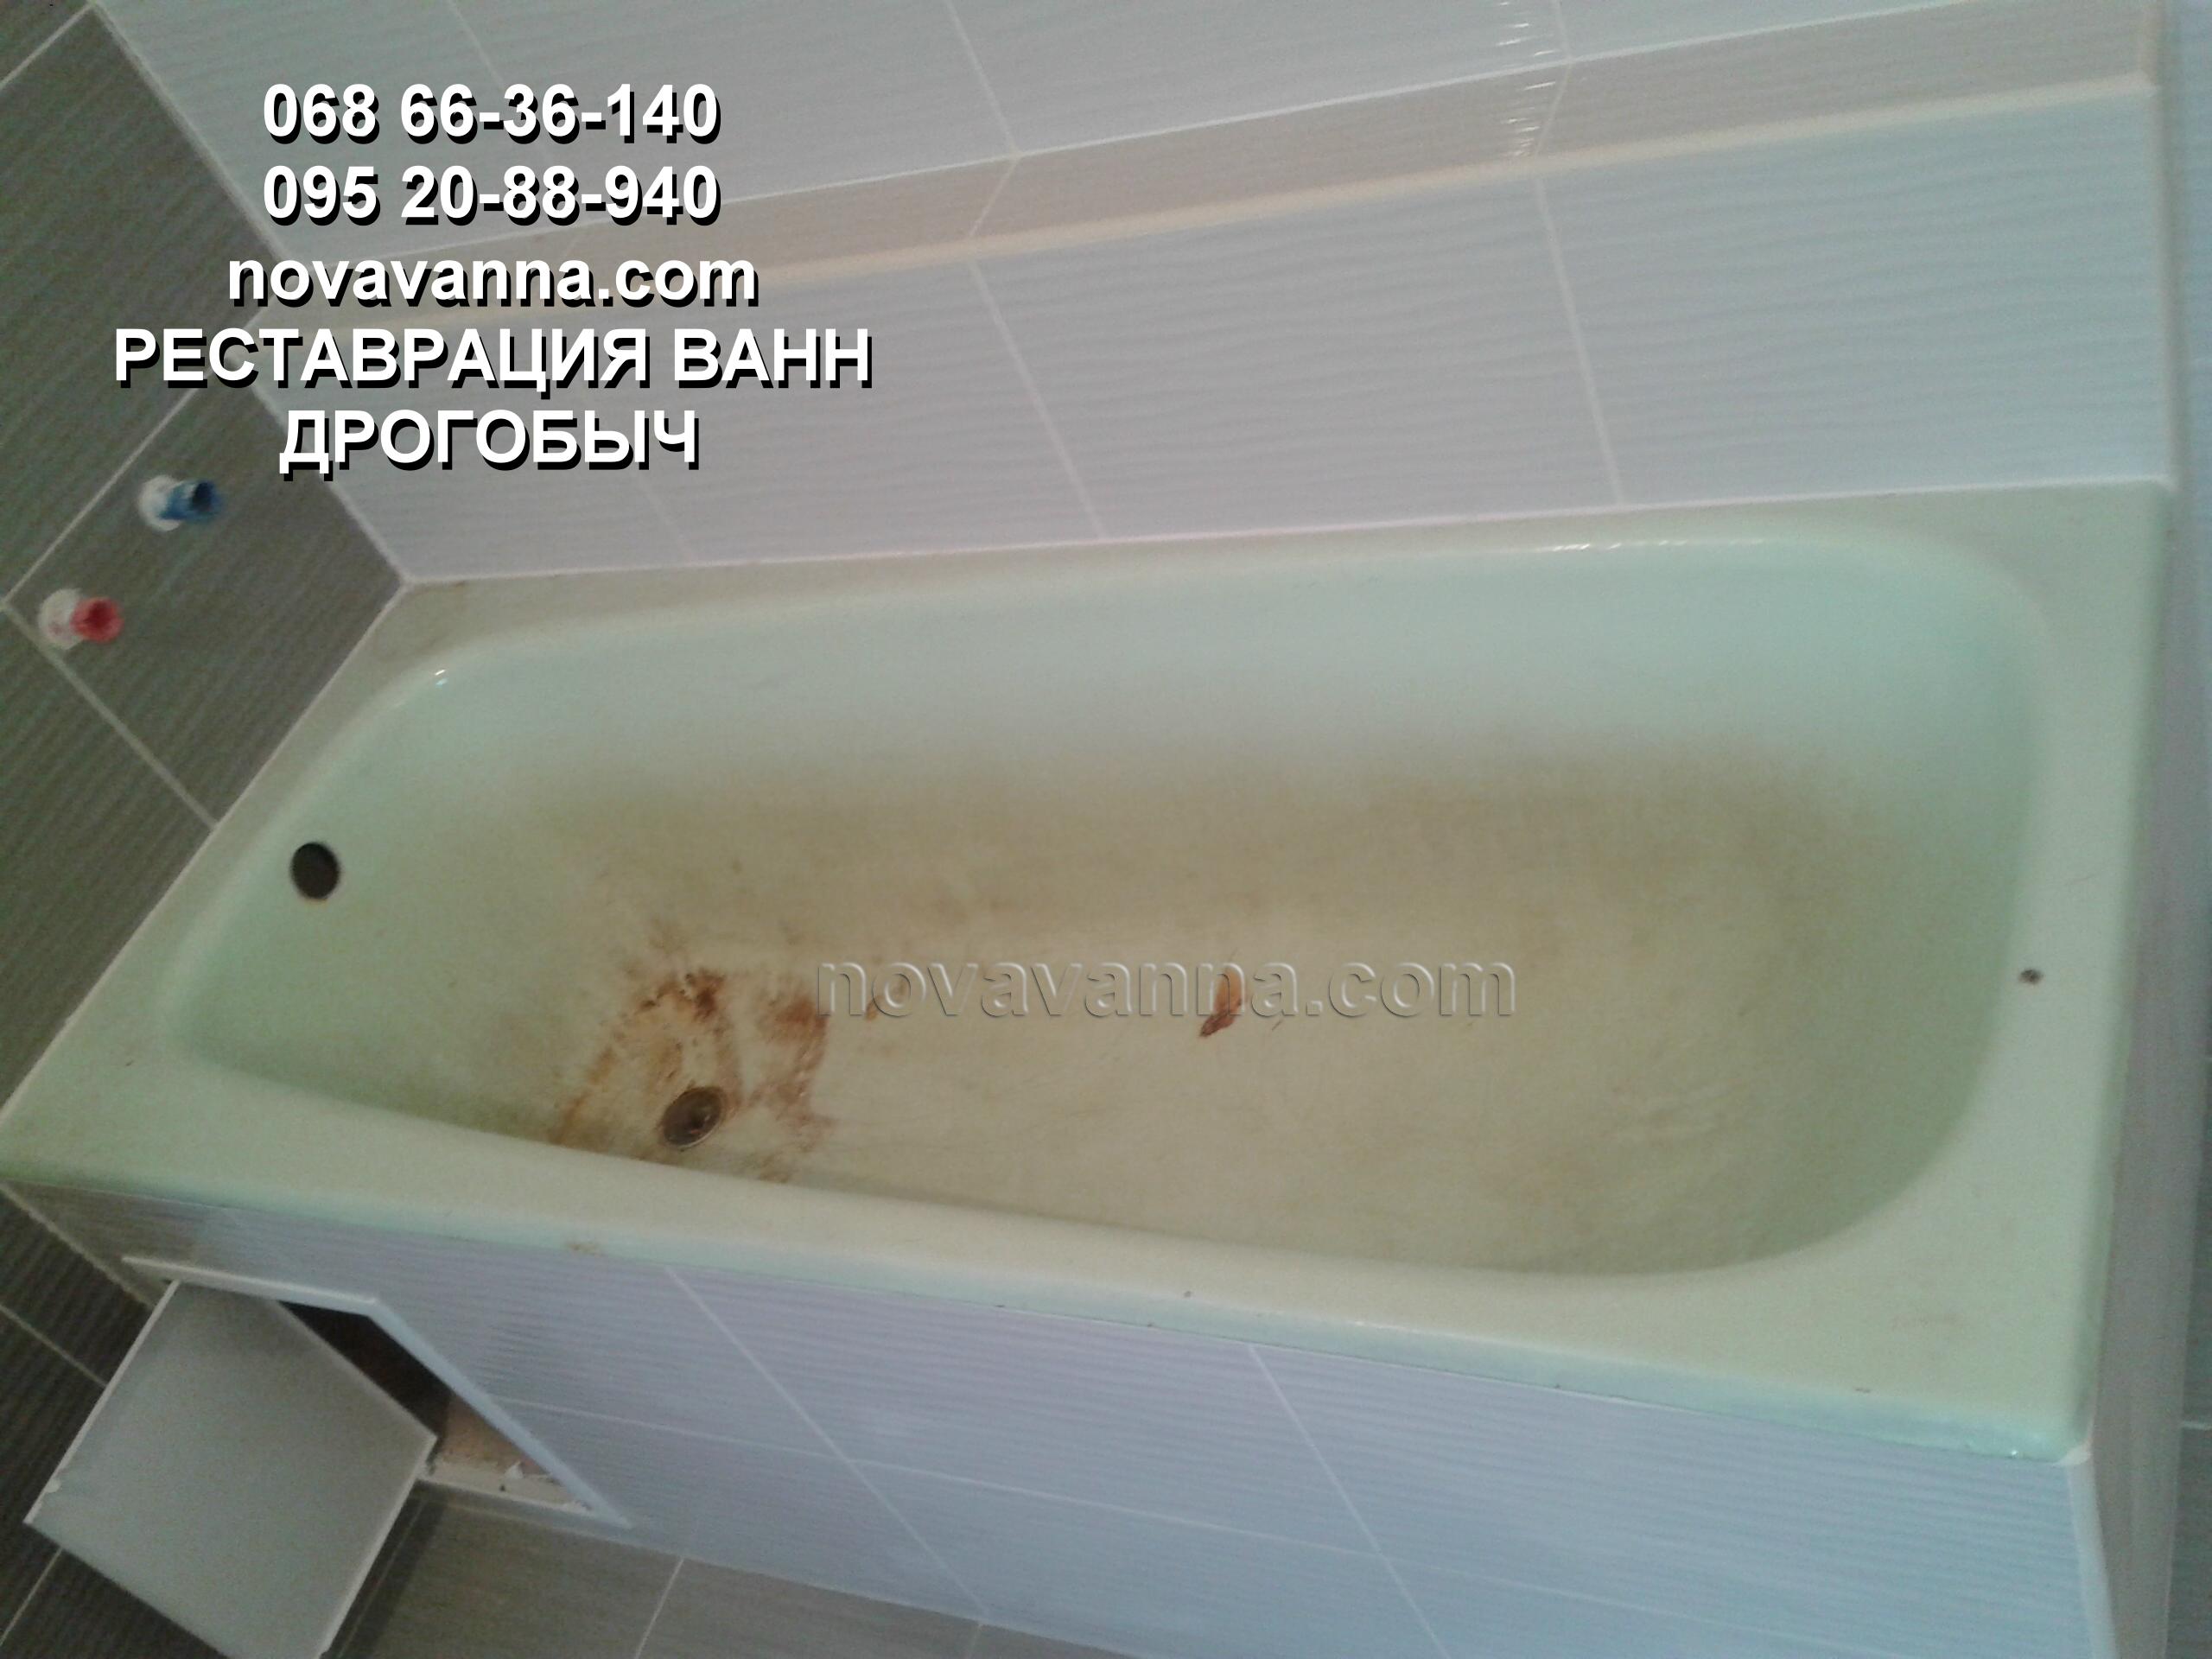 Покраска ванн наливным акрилом Plastall от Pabrec d.o.o.: преимущества